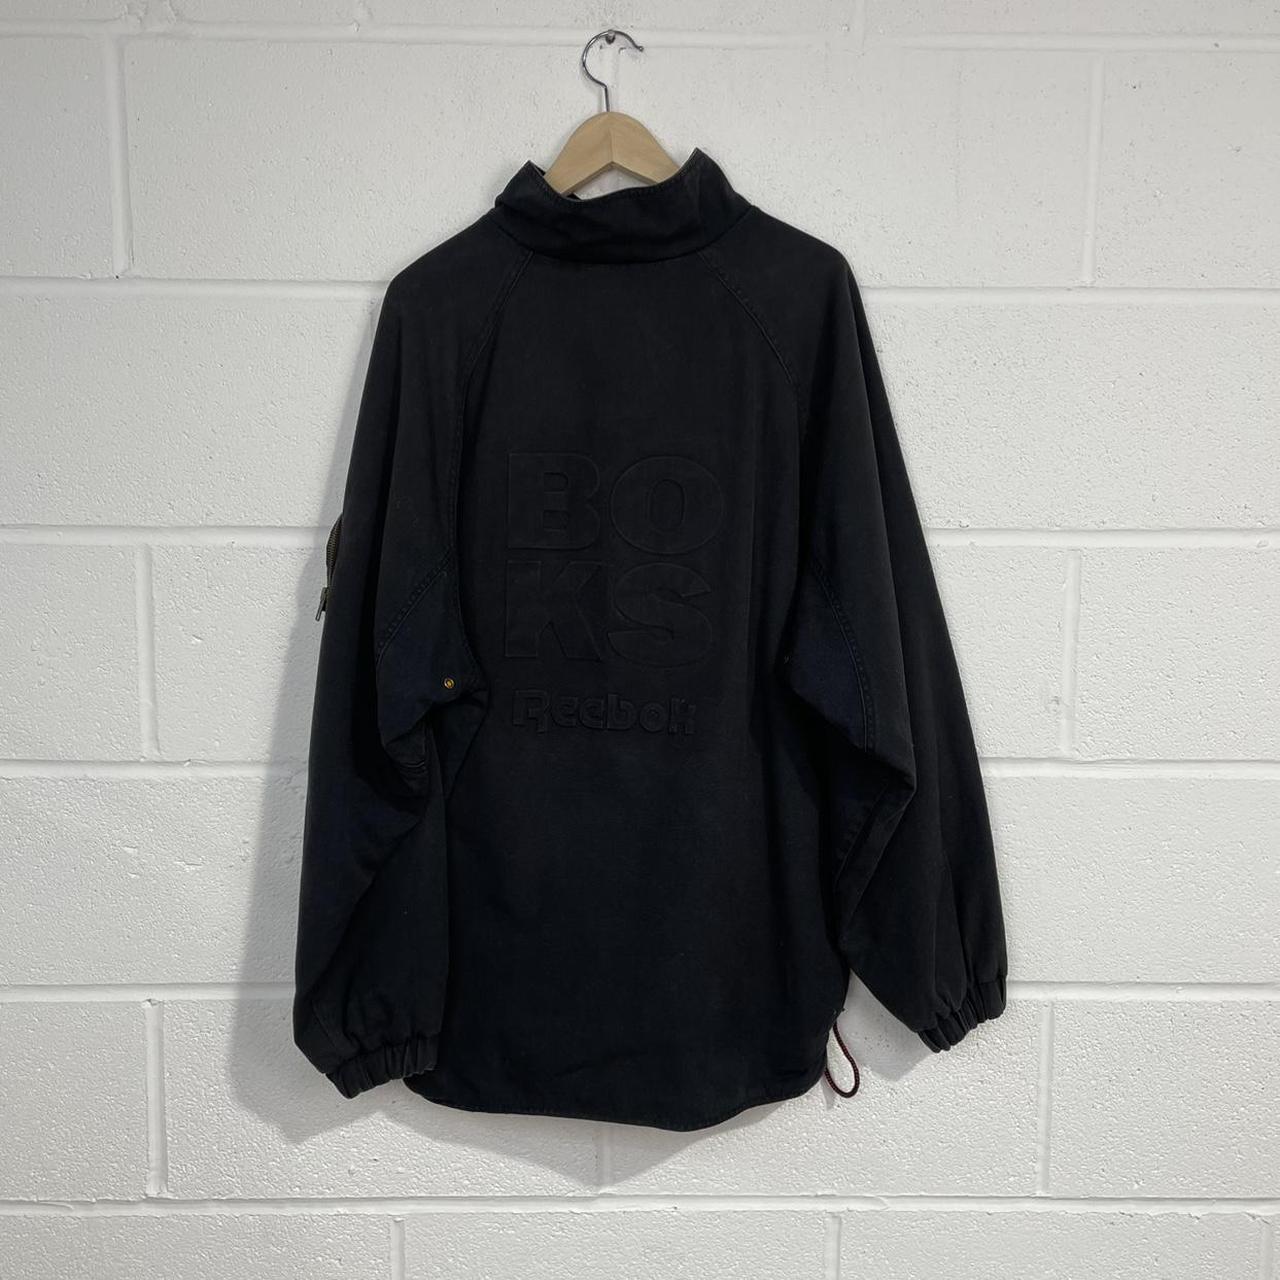 Product Image 2 - Vintage Denim BOKS Reebok Pullover/Poncho/Jacket/Jumper